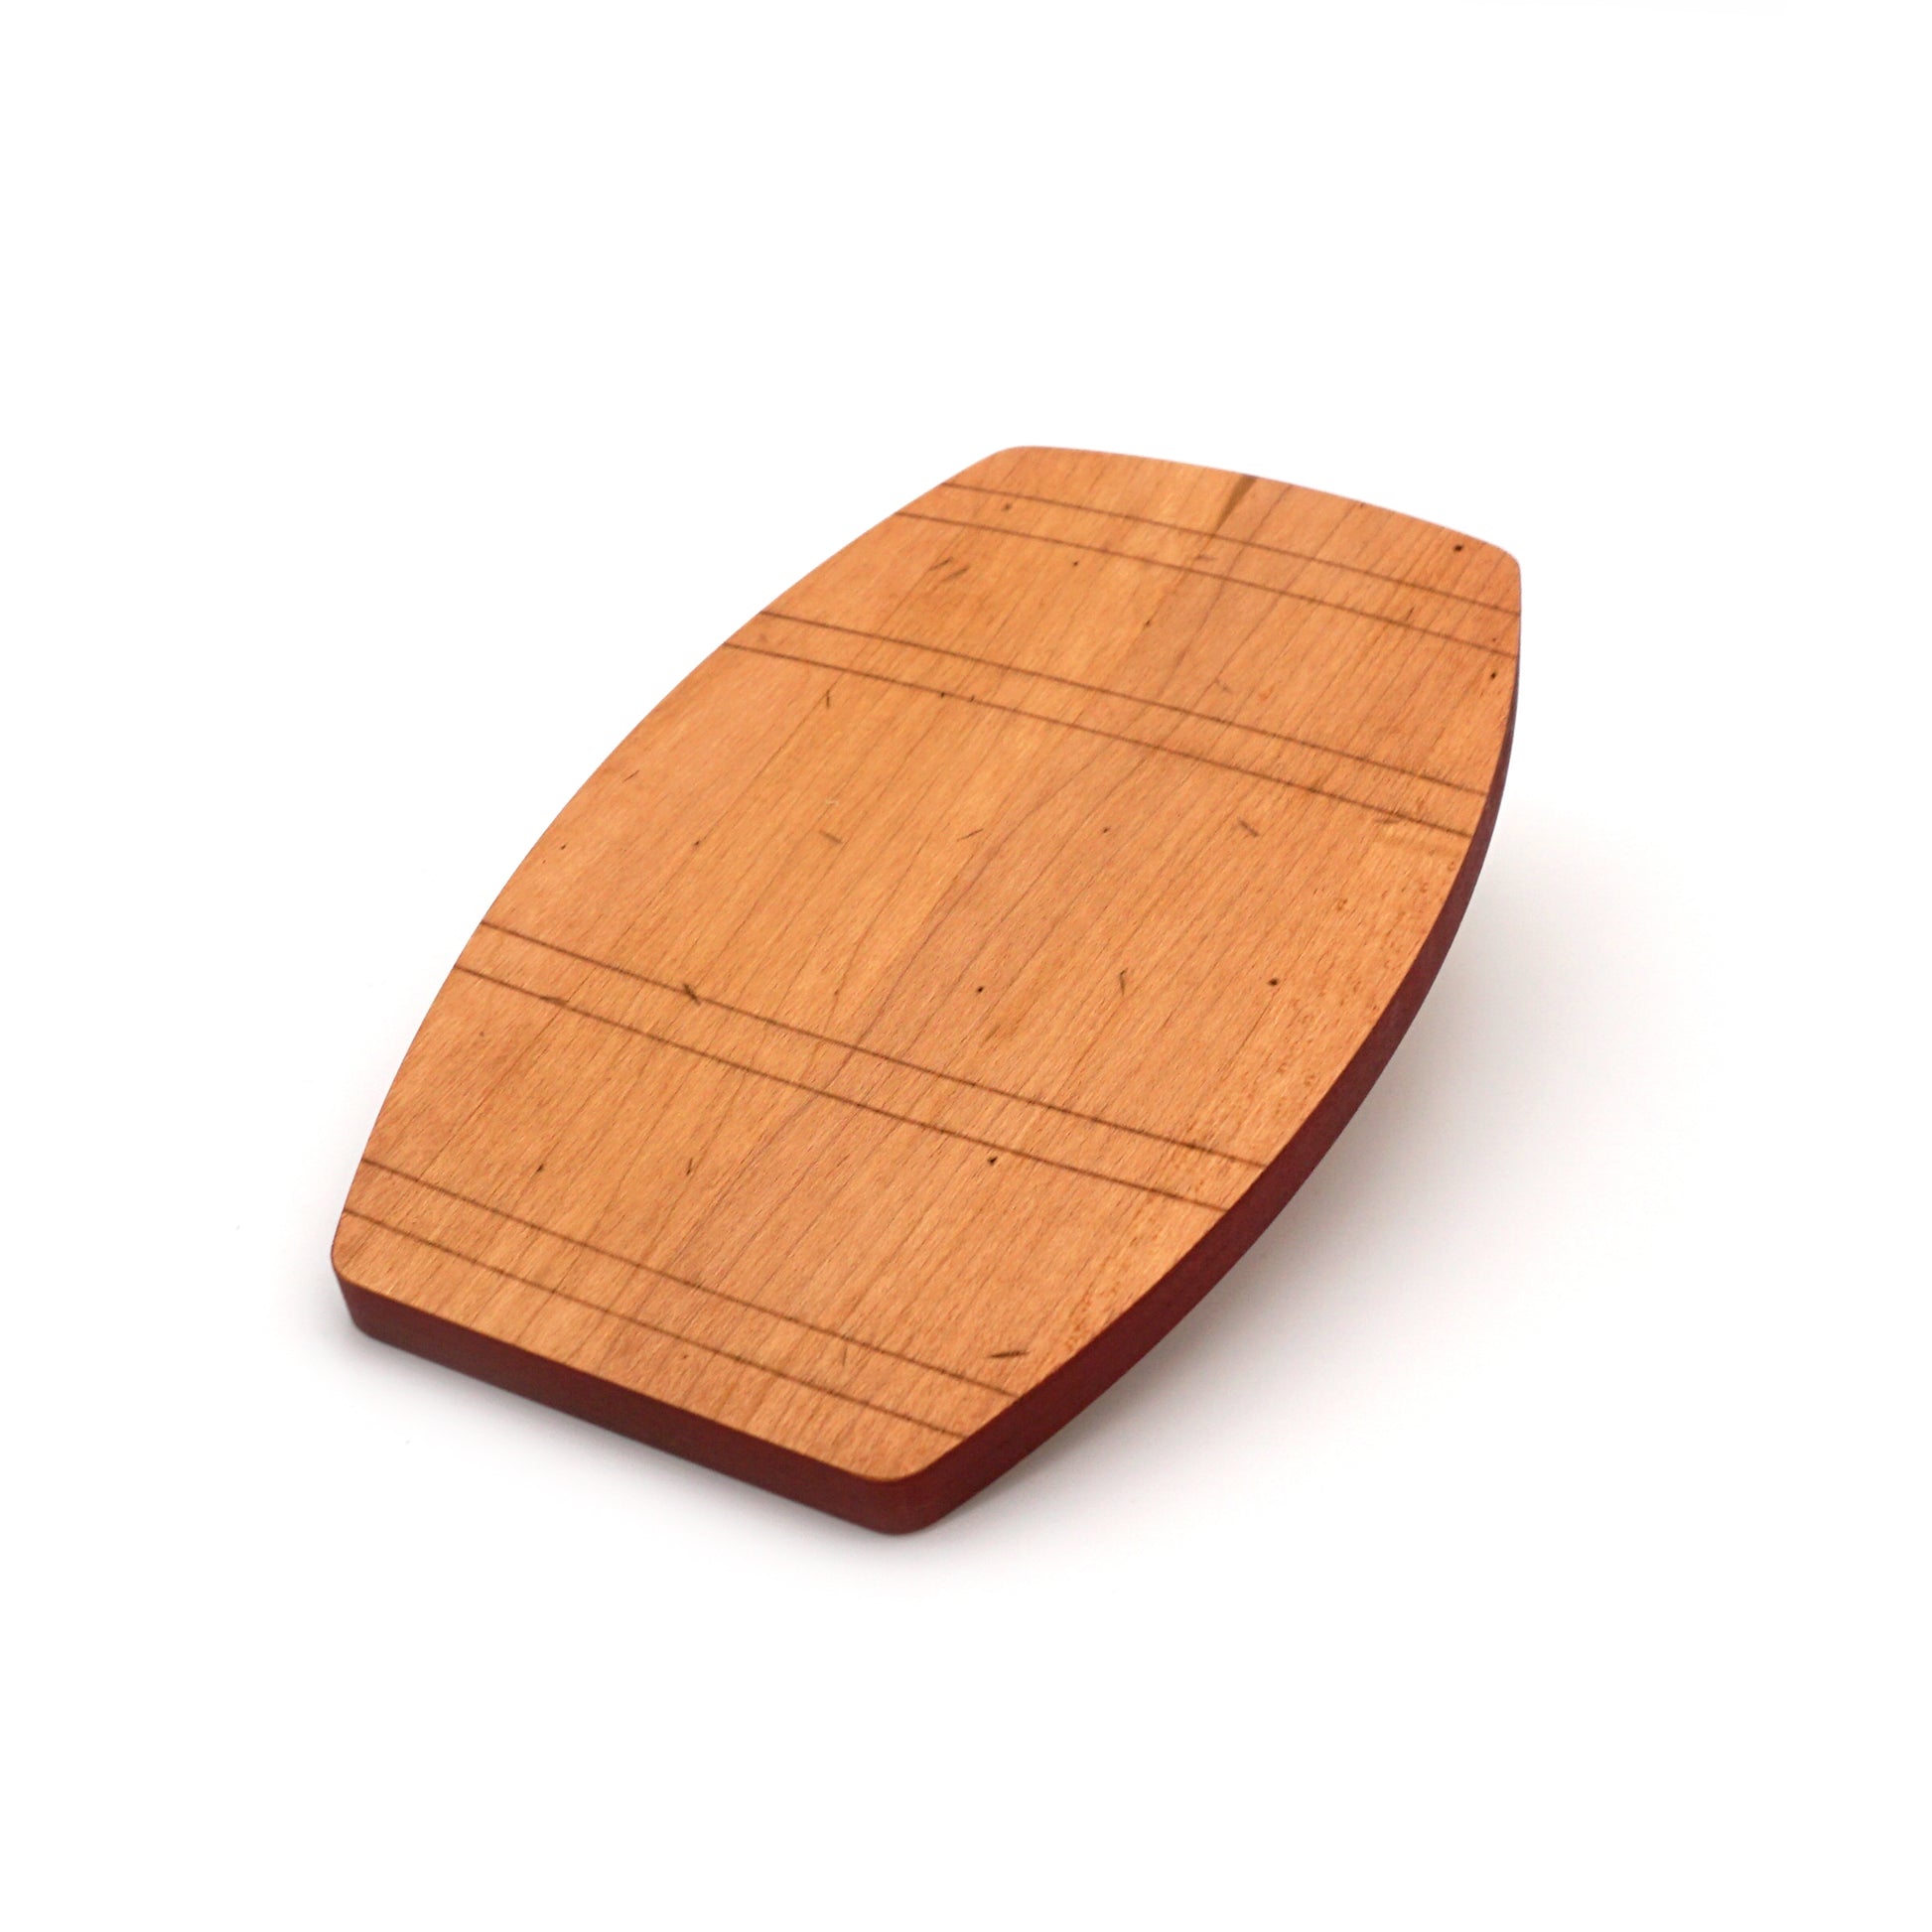 Maple Barrel Shaped Board-7 1/4" x 11 1/4"